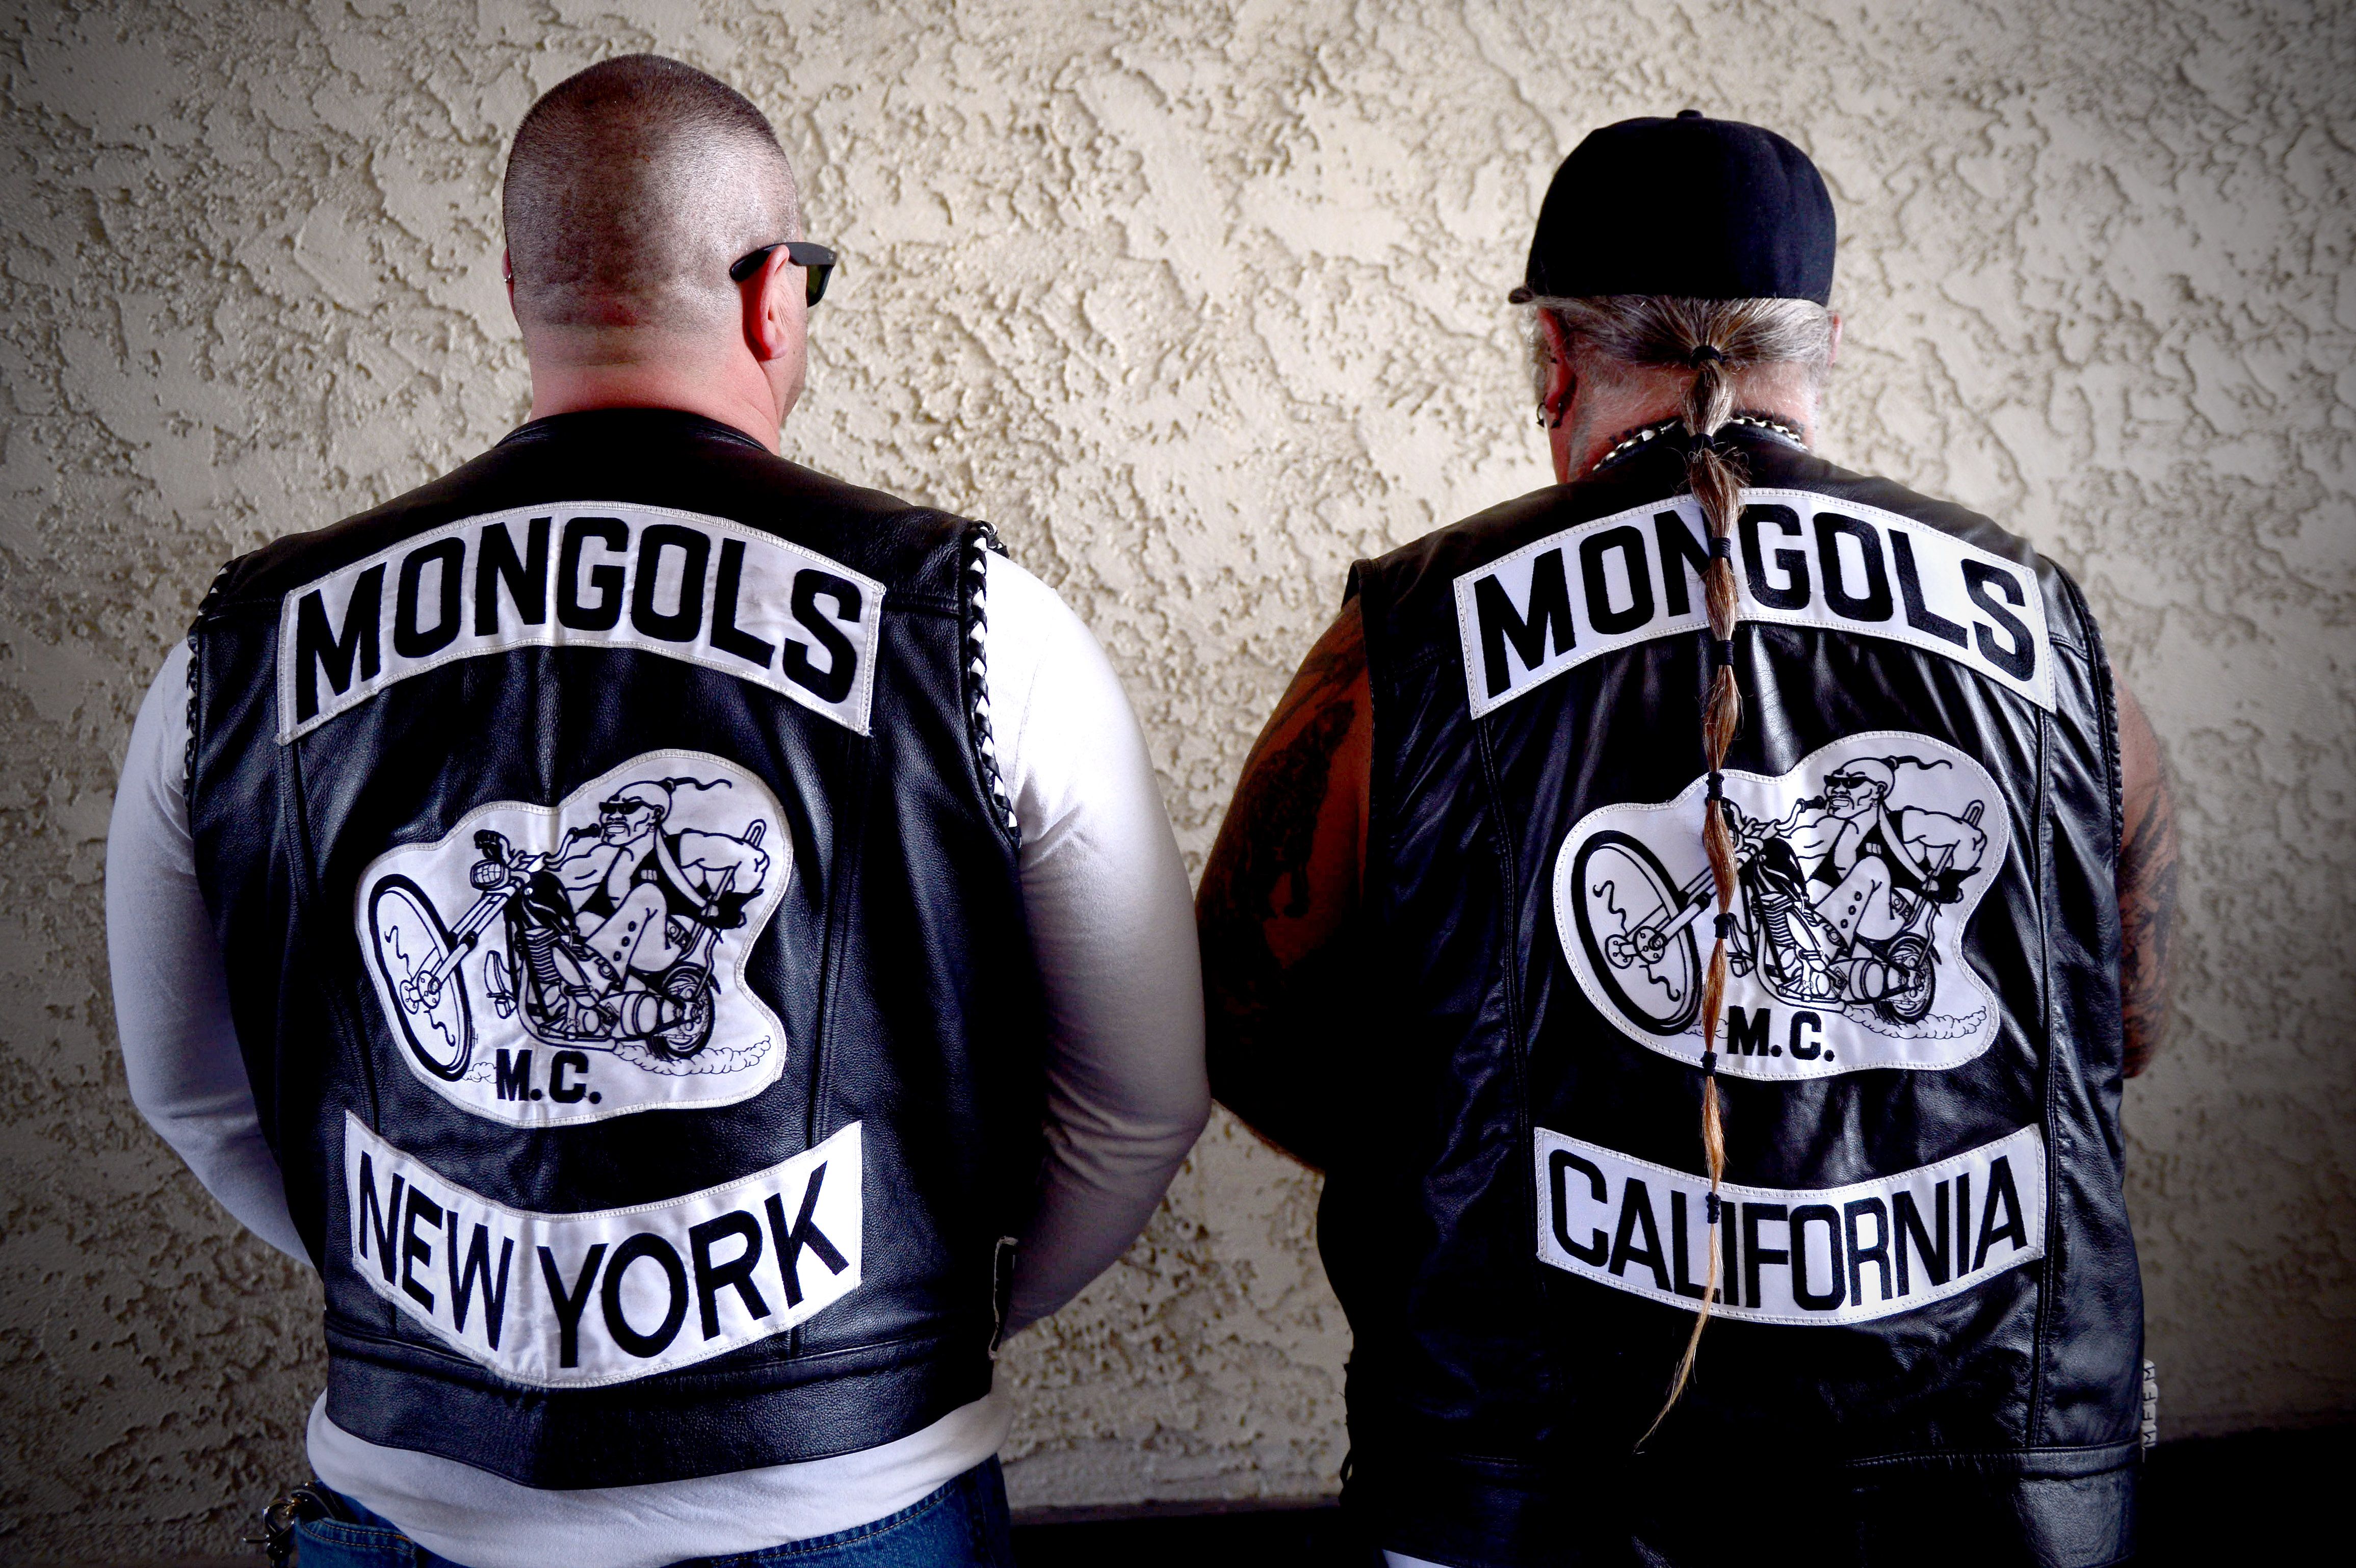 Mongols MC members